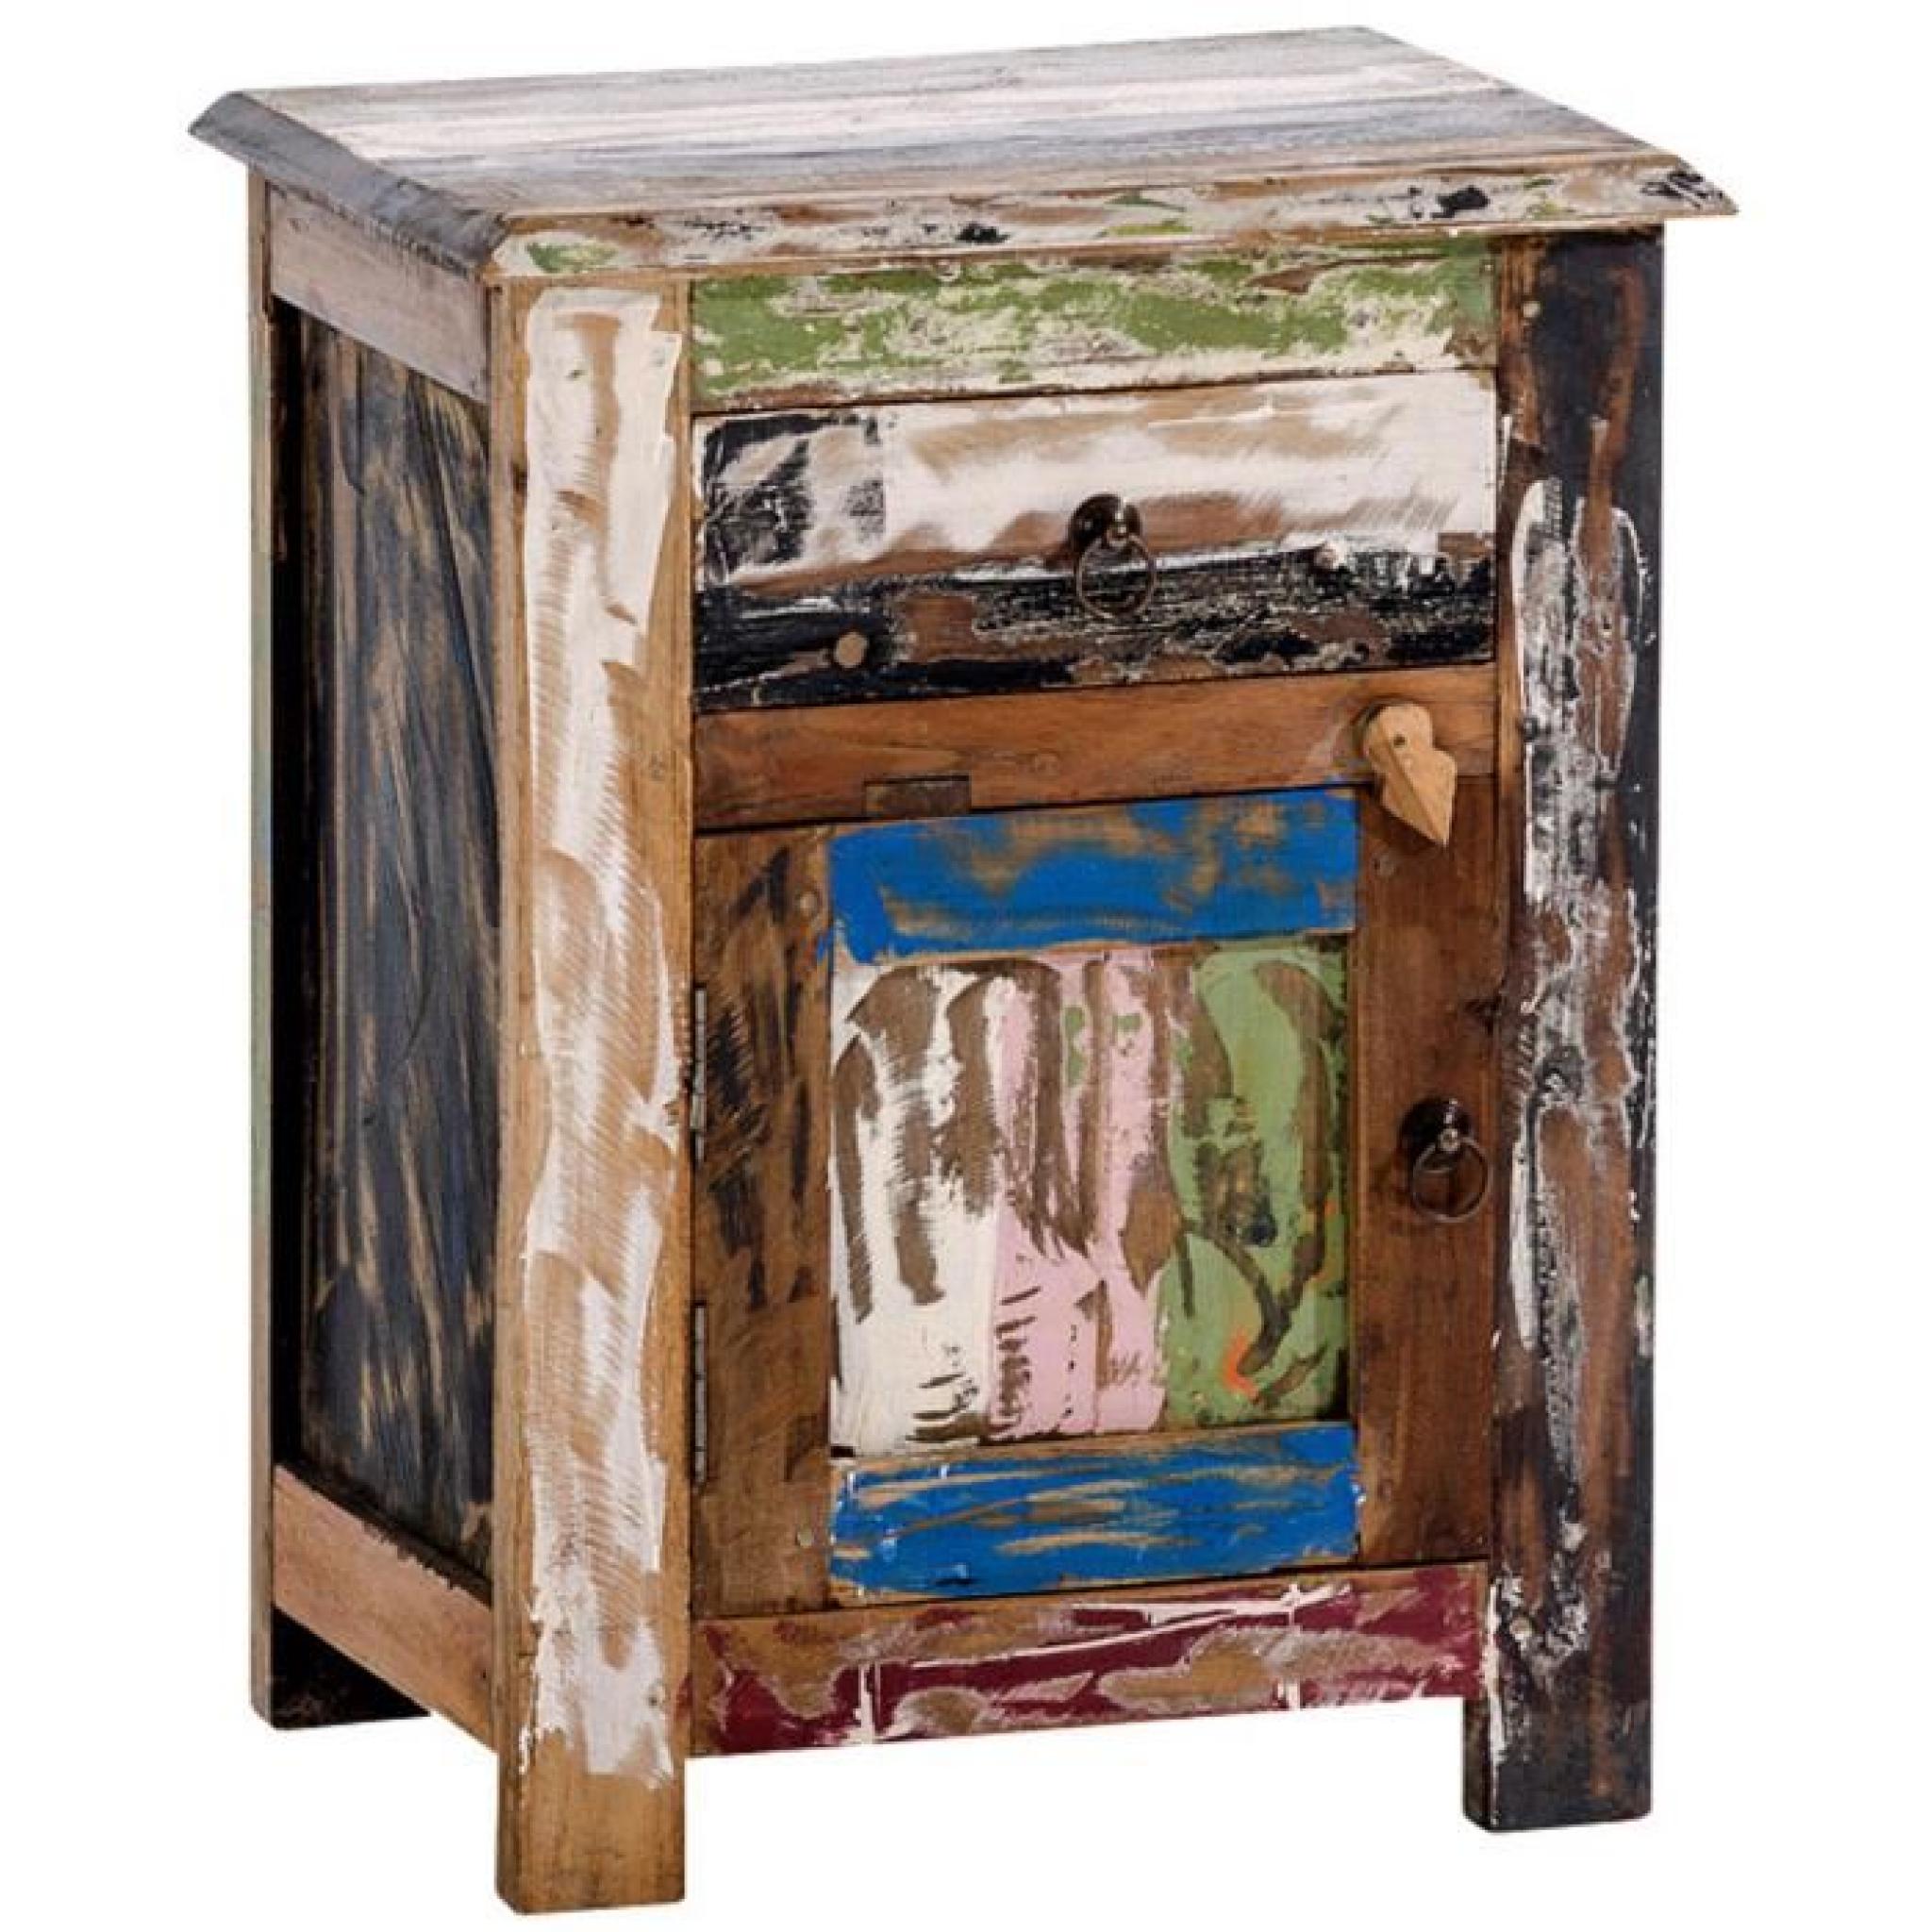 Table de chevet multicolore en teck recyclé avec un tiroir et une porte - Dim : H 58 x L 45 x P 29.5 cm